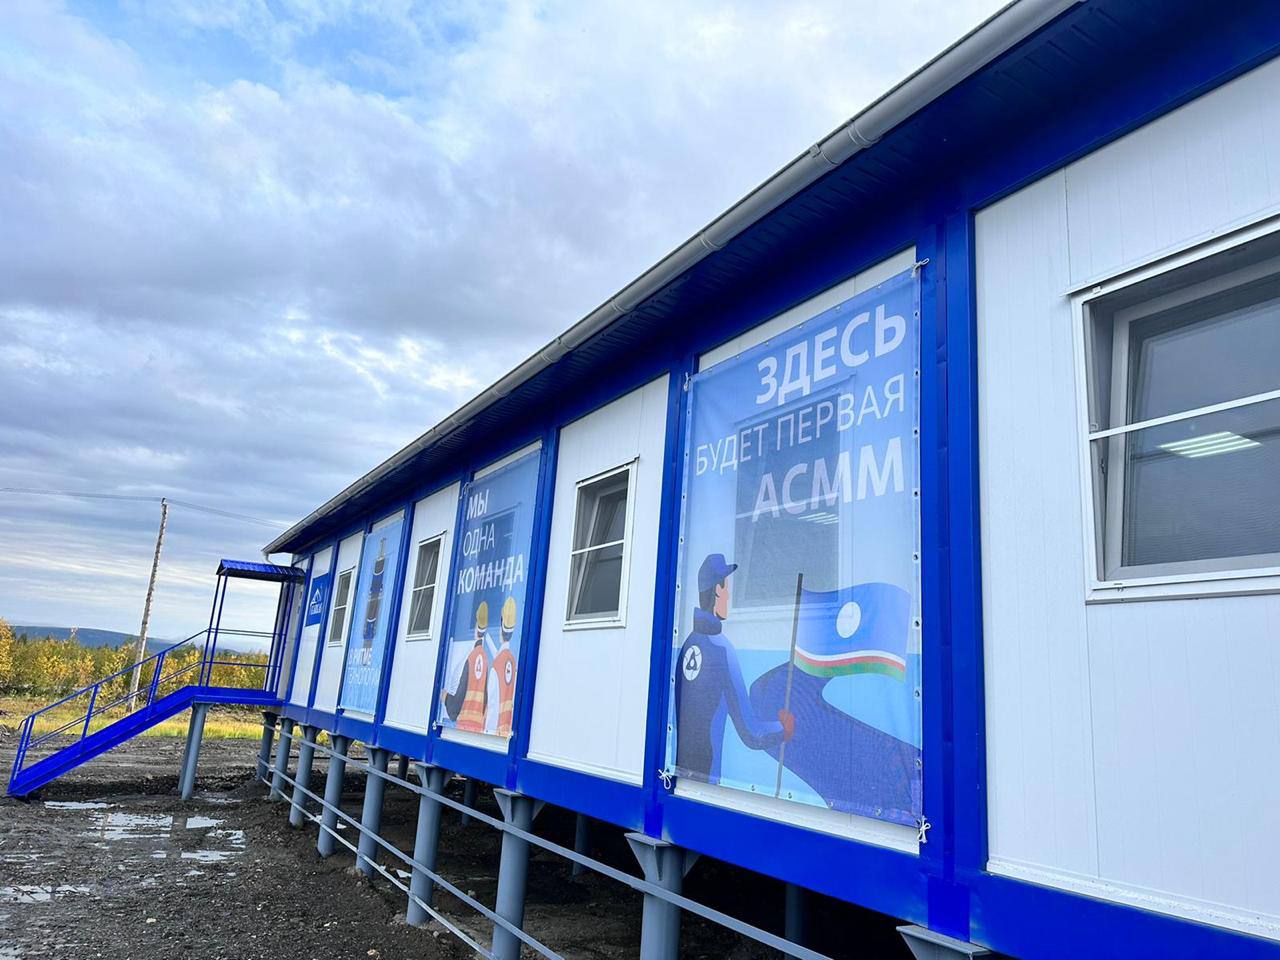 Временный городок строителей атомной станции малой мощности открыли в Усть-Янском районе Якутии